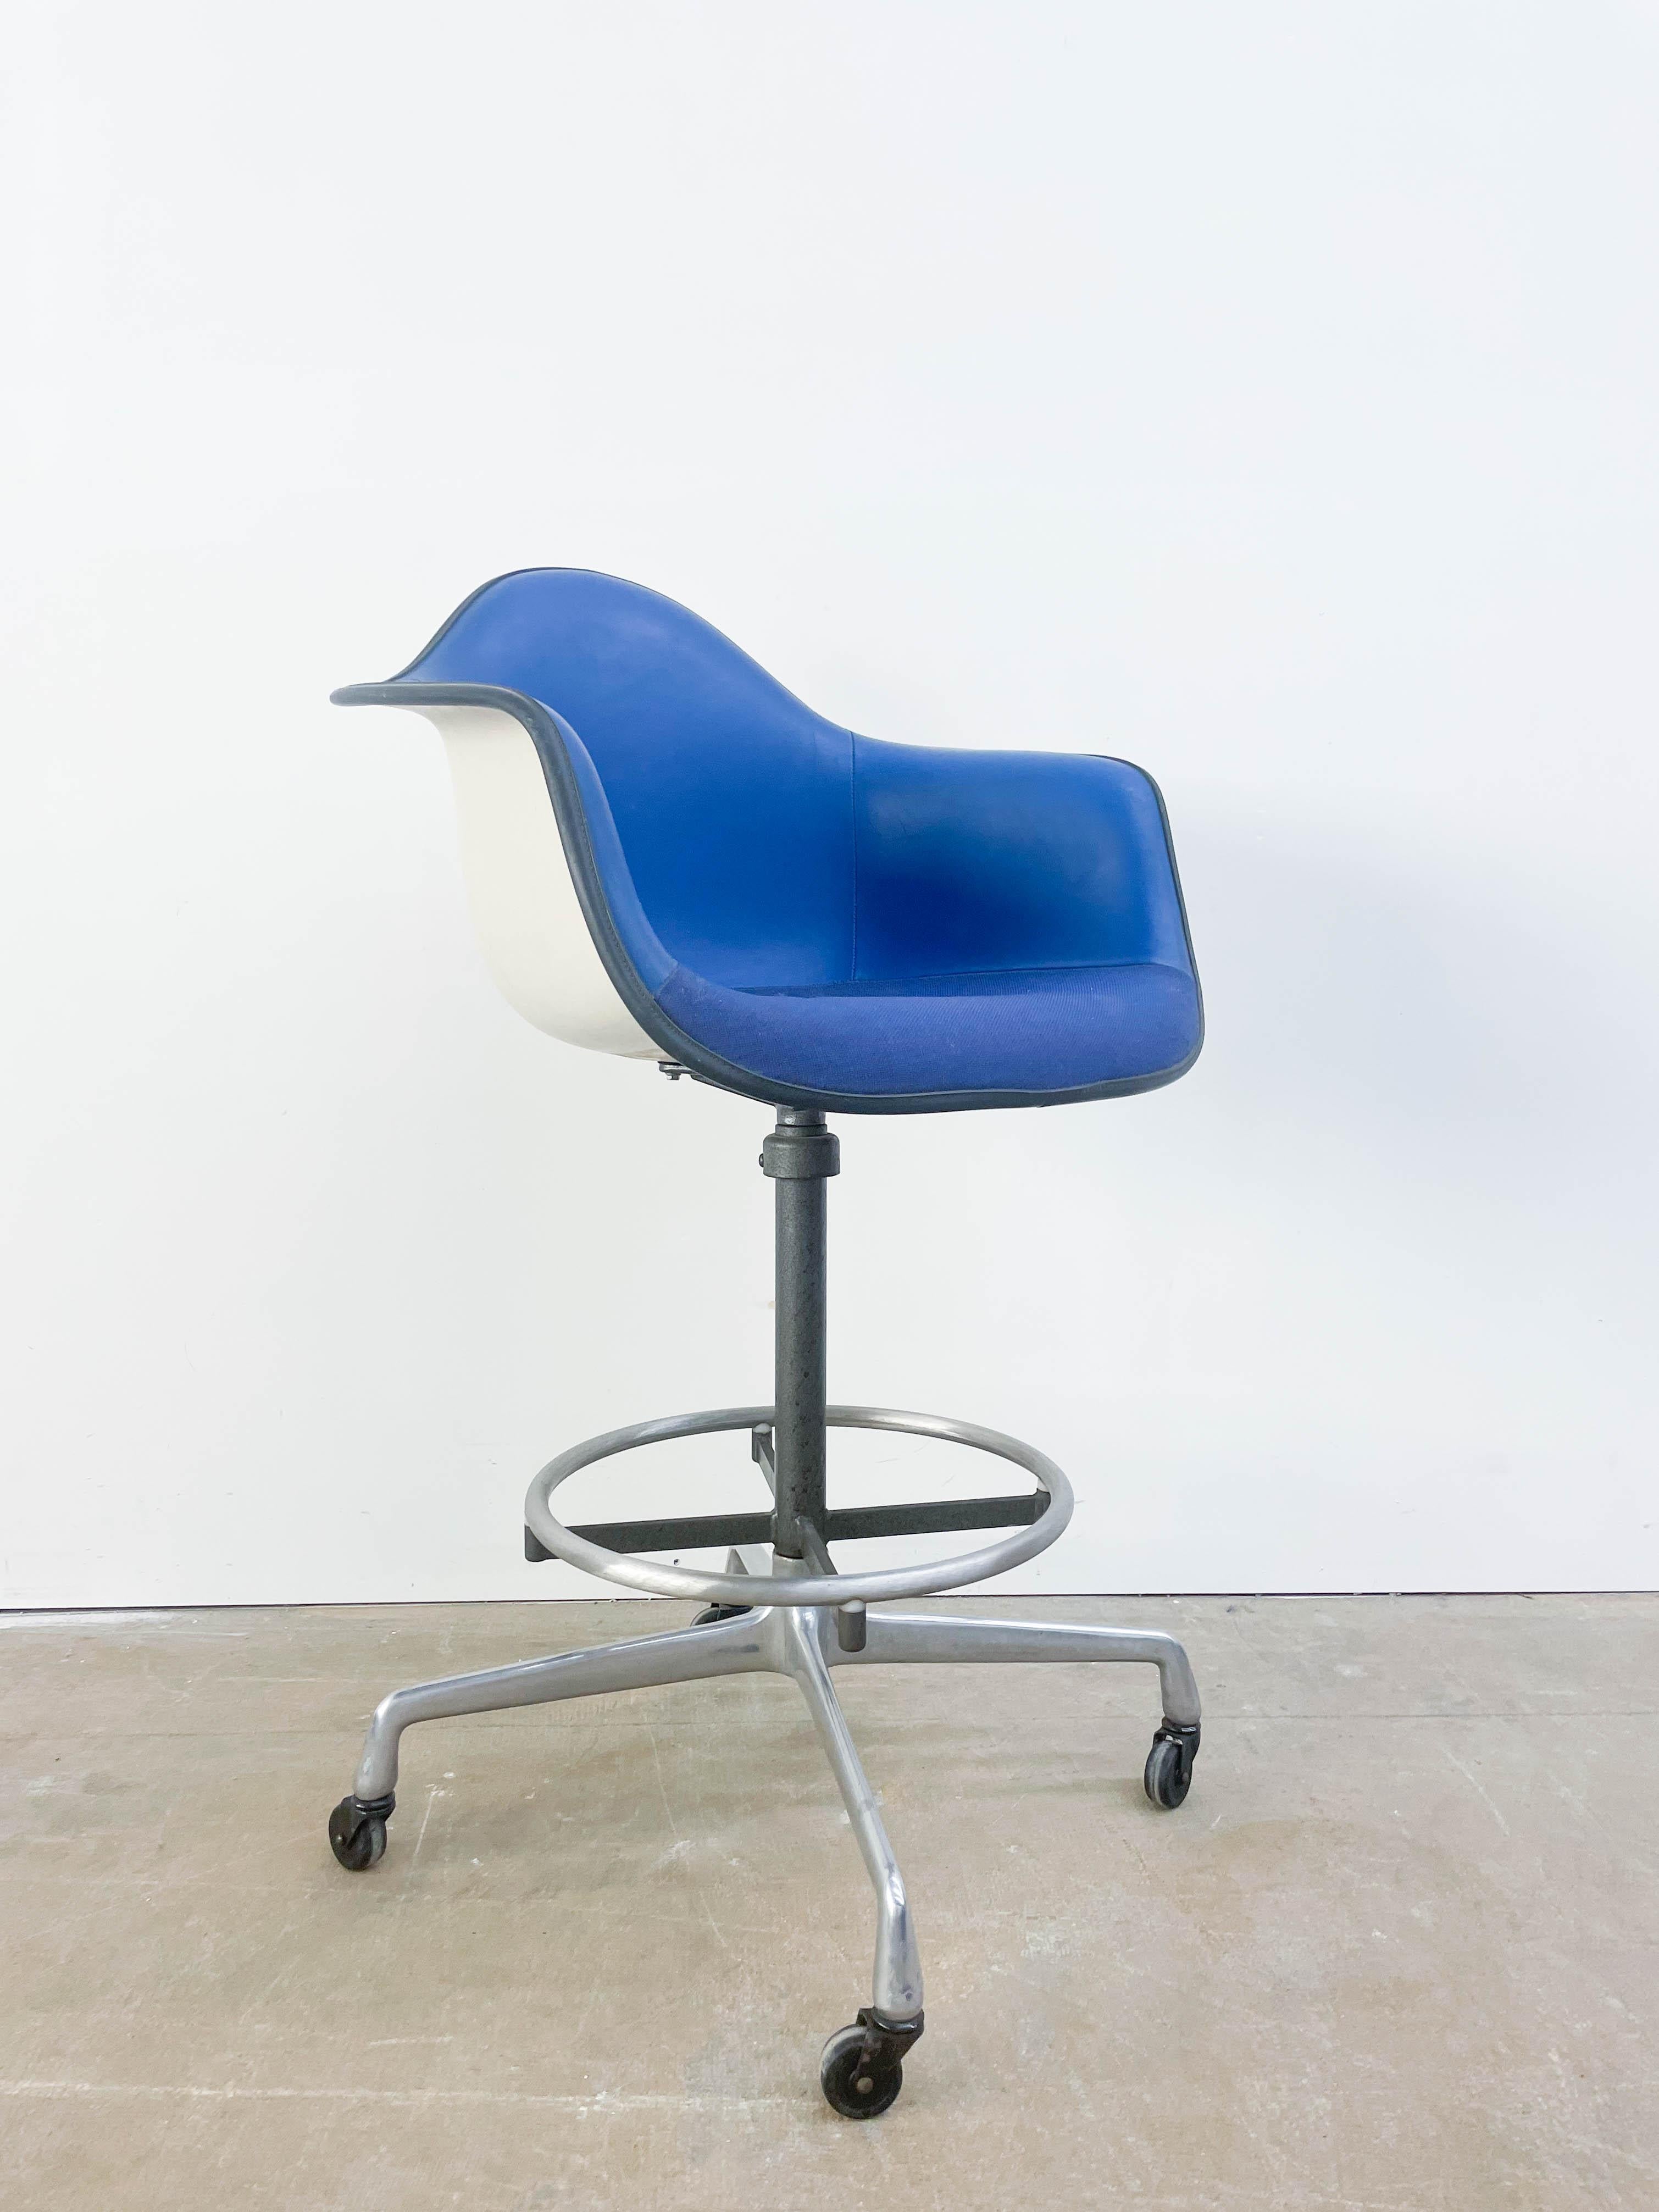 Blau gepolsterter Eames-Stuhl auf hohem Designer-Drehfuß mit Rollen. Dies ist eine ungewöhnliche und auffällige Kombination aus Komfort und Funktionalität.
  